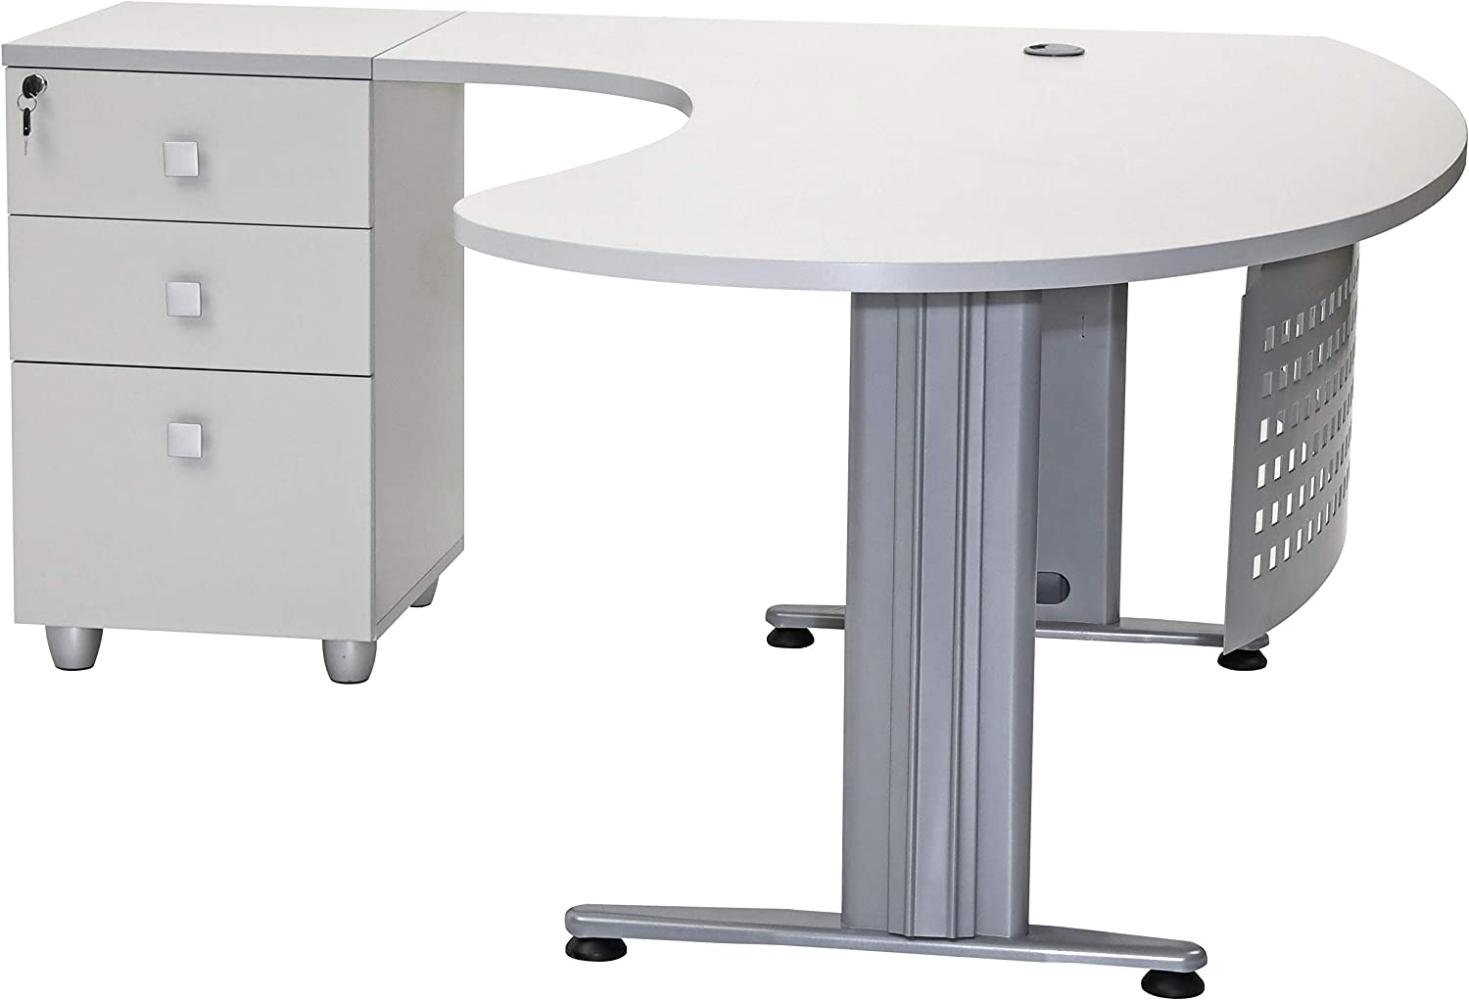 Furni24 Schreibtisch Chefschreibtisch Schreibtisch Winkeltisch PC Tisch Moderner Bürotisch Computertisch mit großer Arbeitsfläche Gela Grau Dekor Links gewinkelt Ink. Beistellcontainer mit Schubladen Bild 1